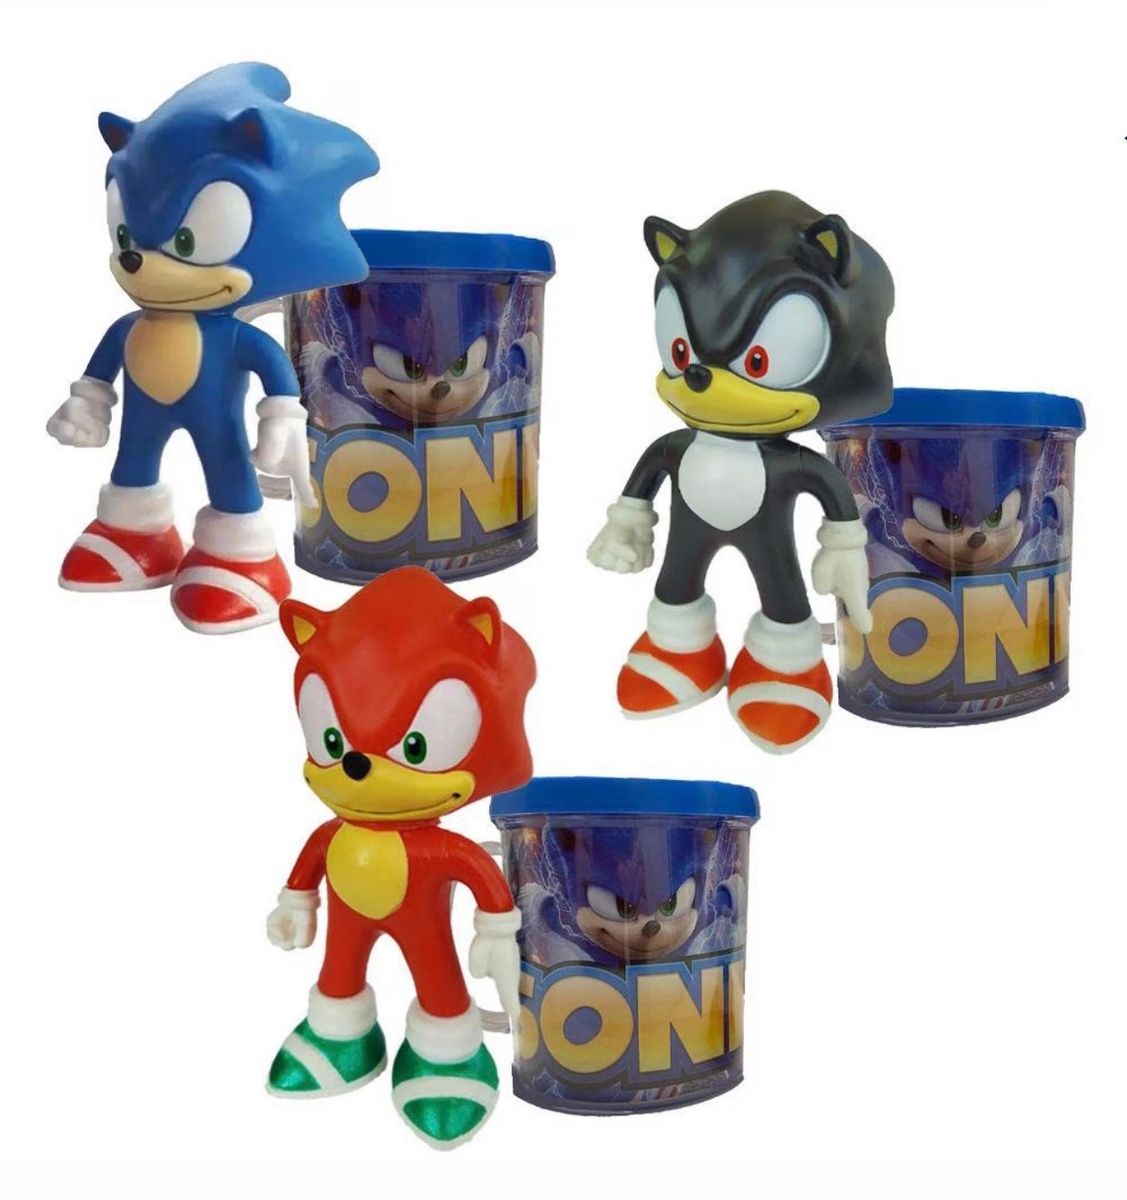 Copo Caneca Sonic com Personagem Sonic Vermelho de Plástico, Canequinha  Sonic Nunca Usado 84392849